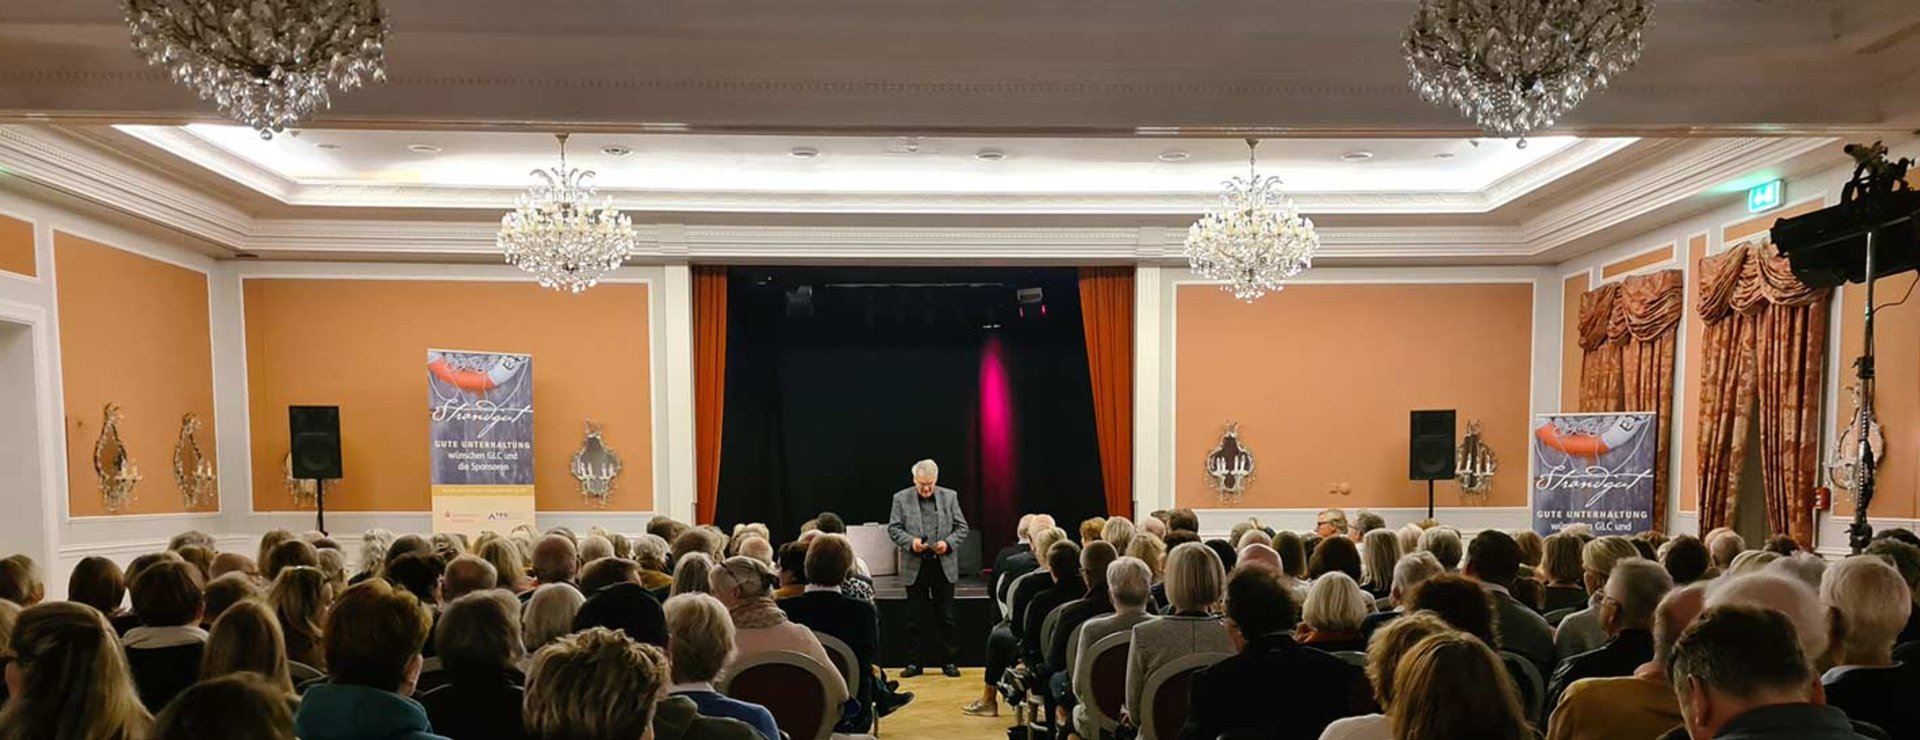 Elisabethsaal im Strandhotel Glücksburg bei Strandgut-Veranstaltung